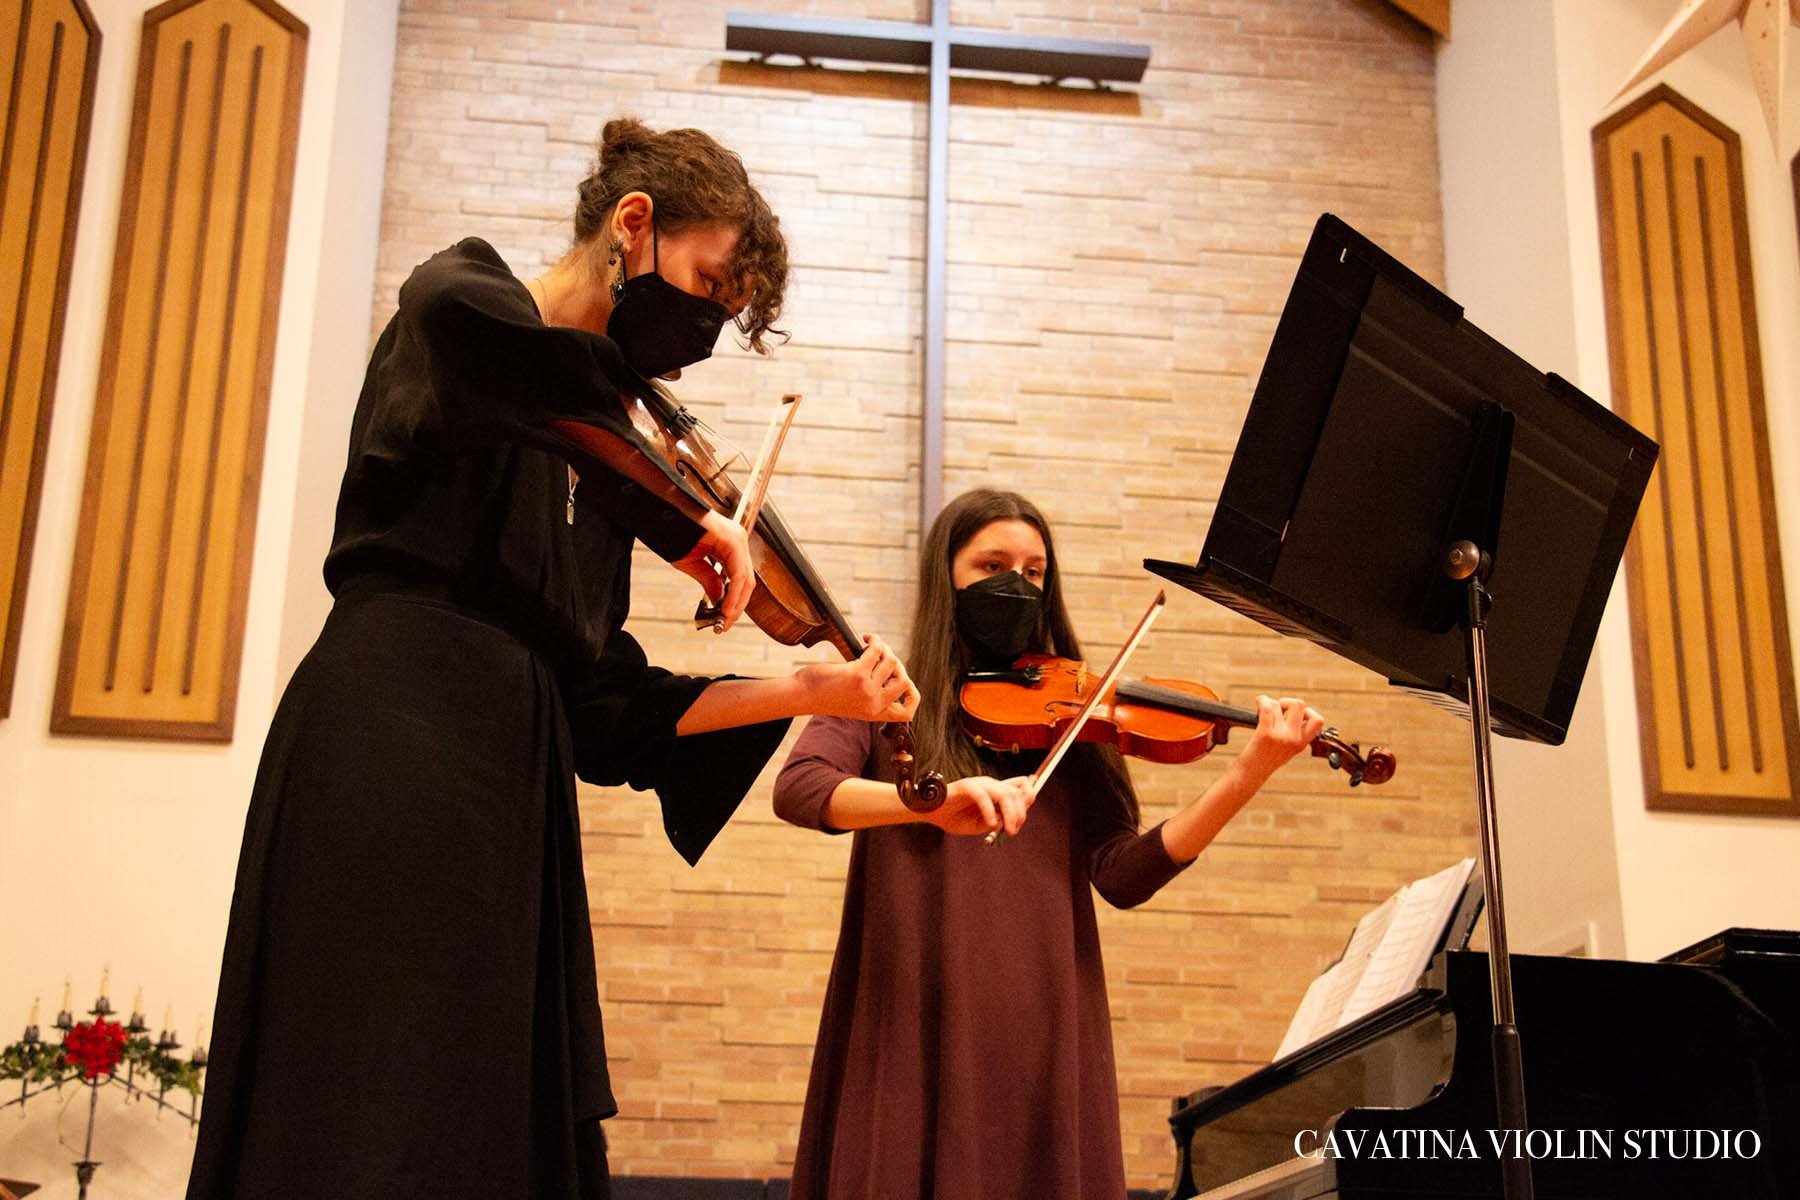 Cavatina Violin Studio